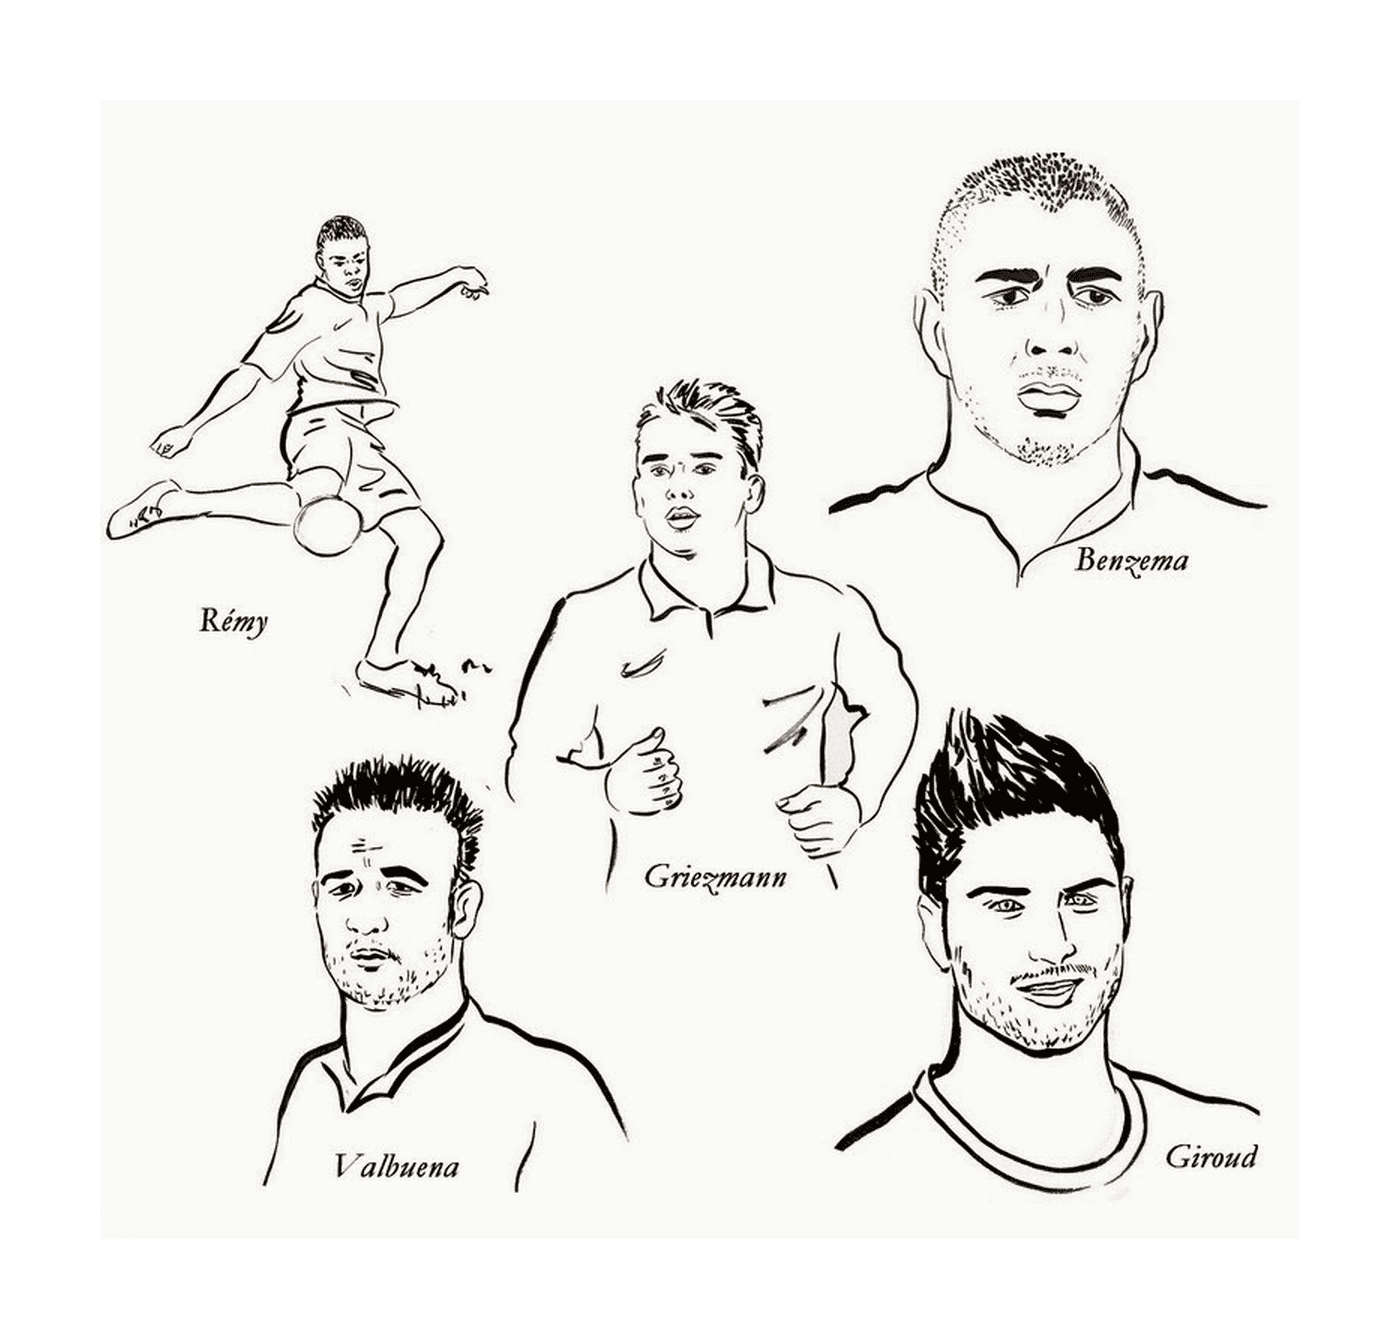   Karim Benzema, Griezmann et d'autres joueurs de football 